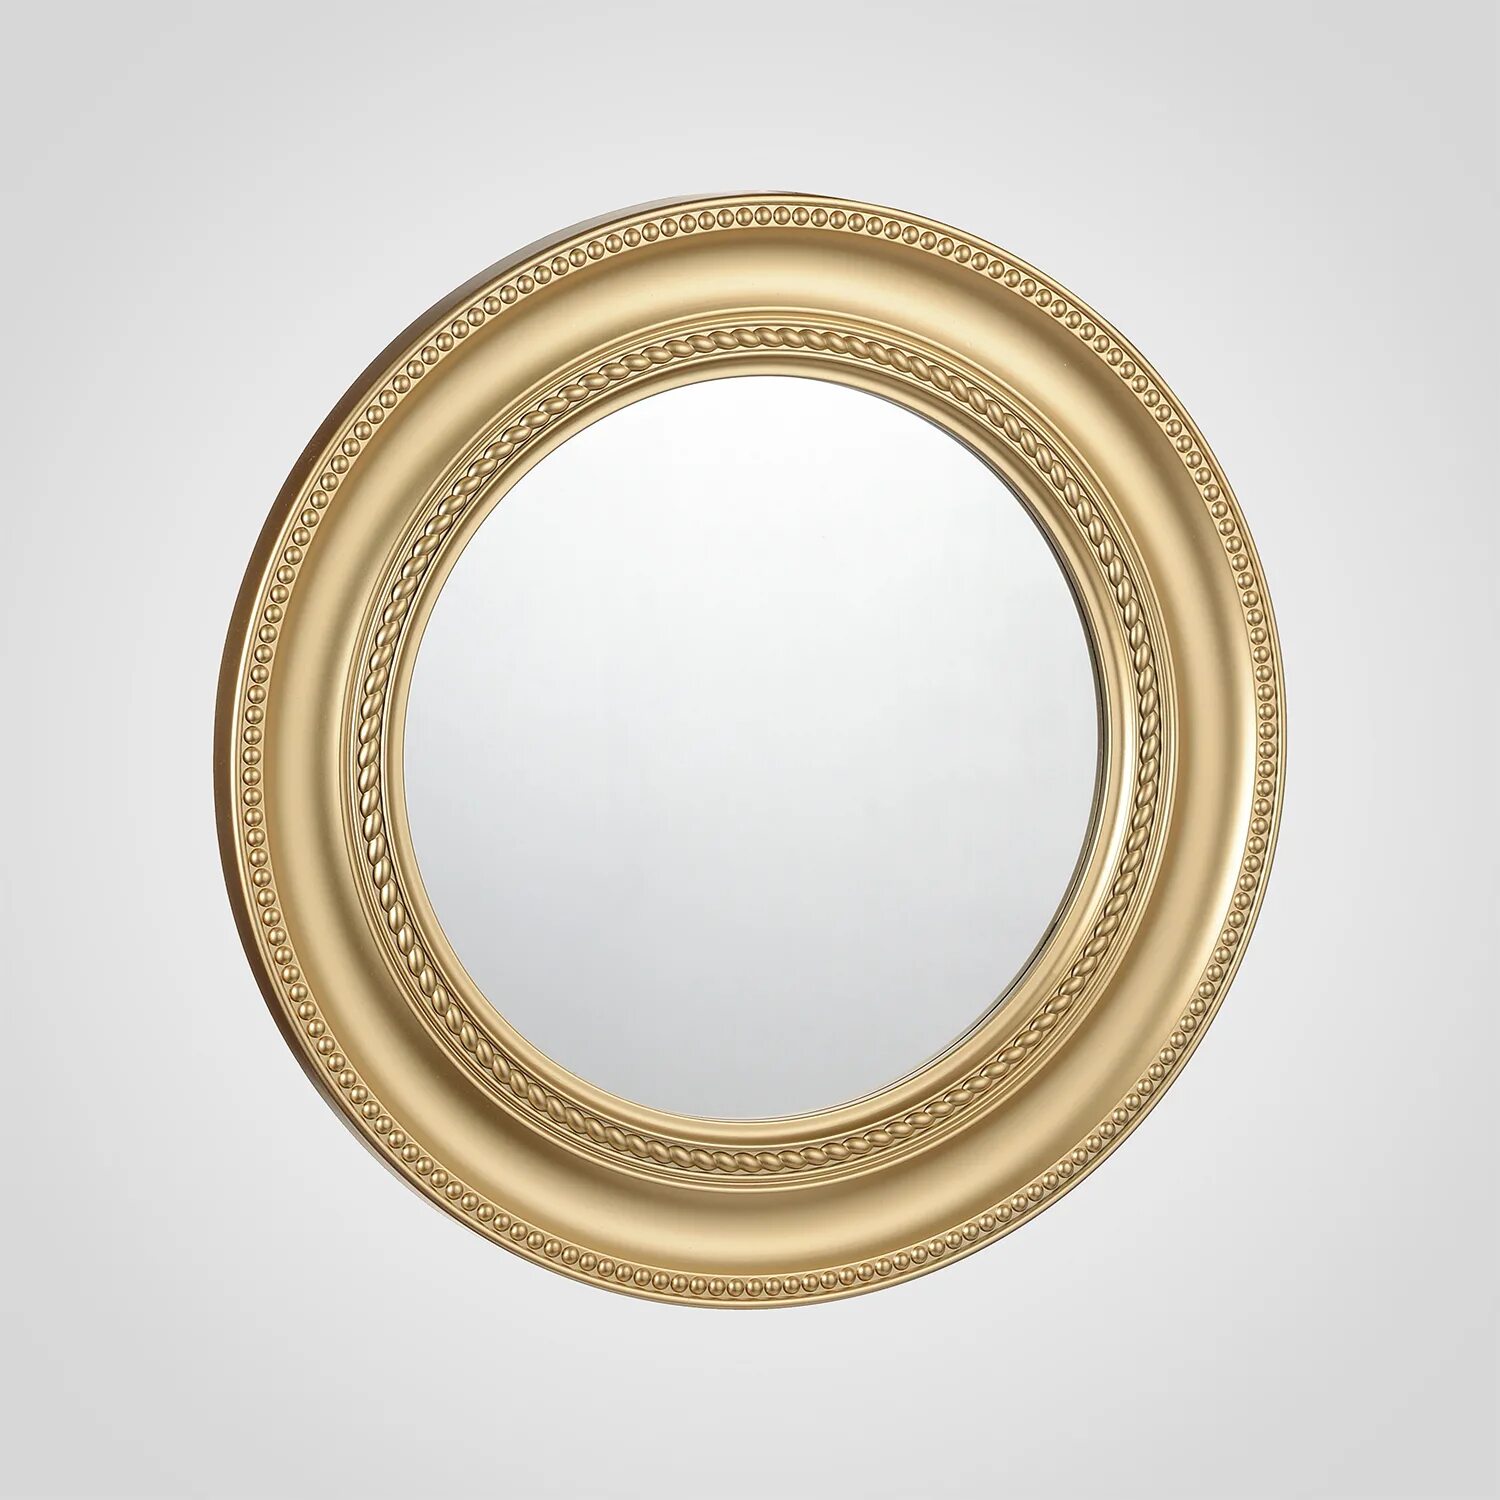 Зеркало золотое круглое "Вернер". Зеркало круглое migliore 30584 золото. Круглое зеркало в золотой оправе. Зеркало круглое 90 см.